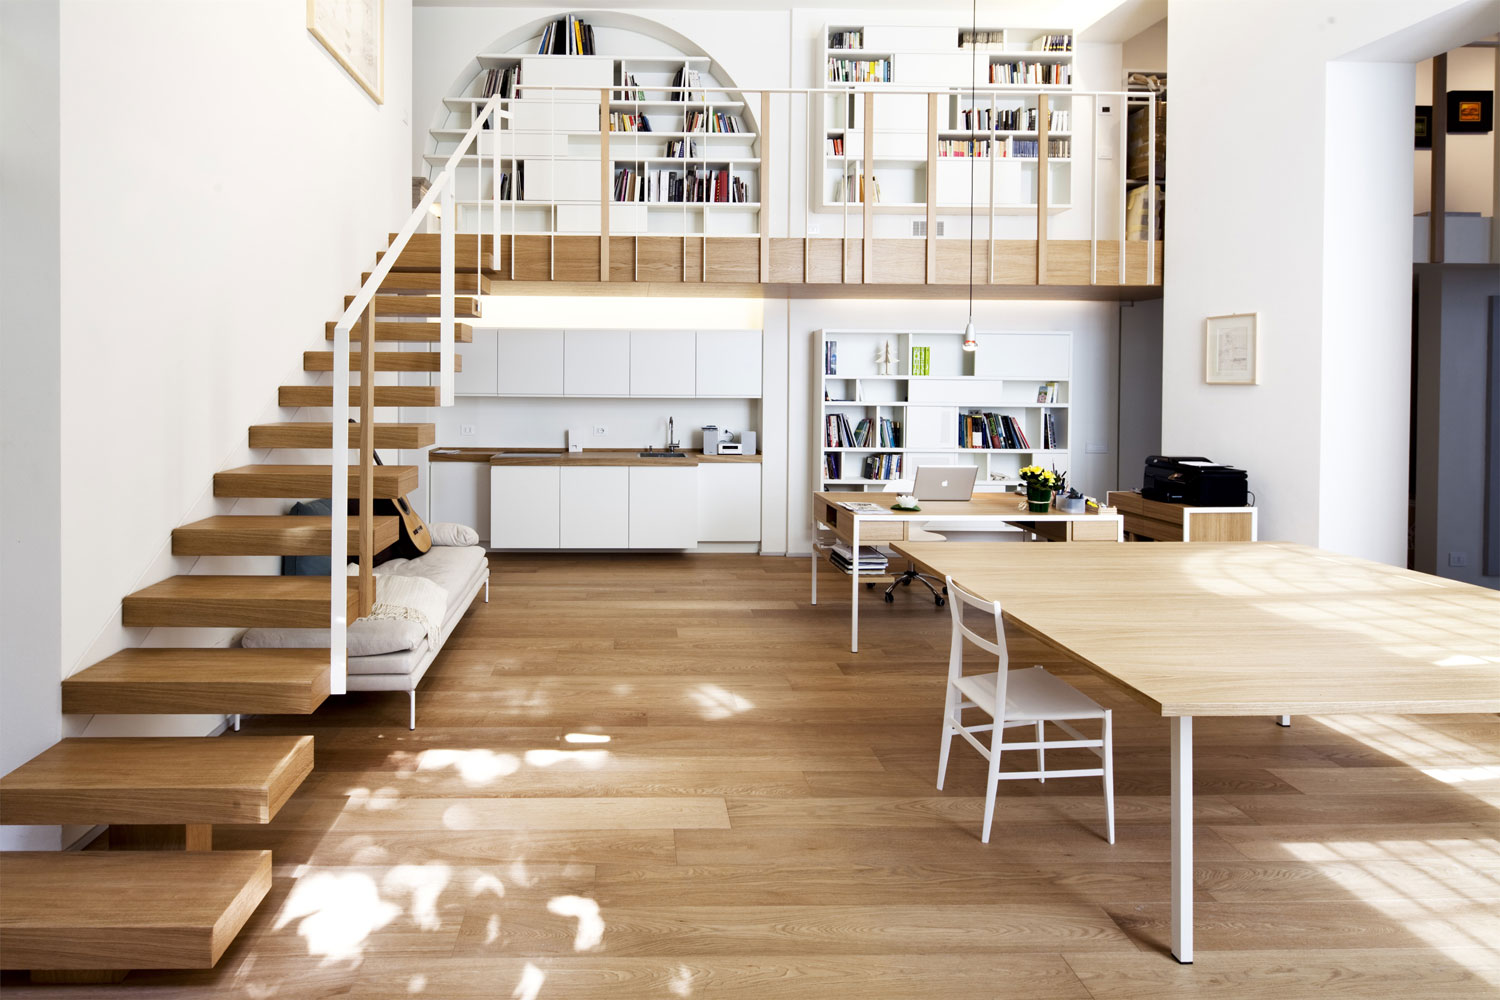 Sàn gỗ công nghiệp vật liệu hoàn hảo cho xu hướng nhà ở hiện đại